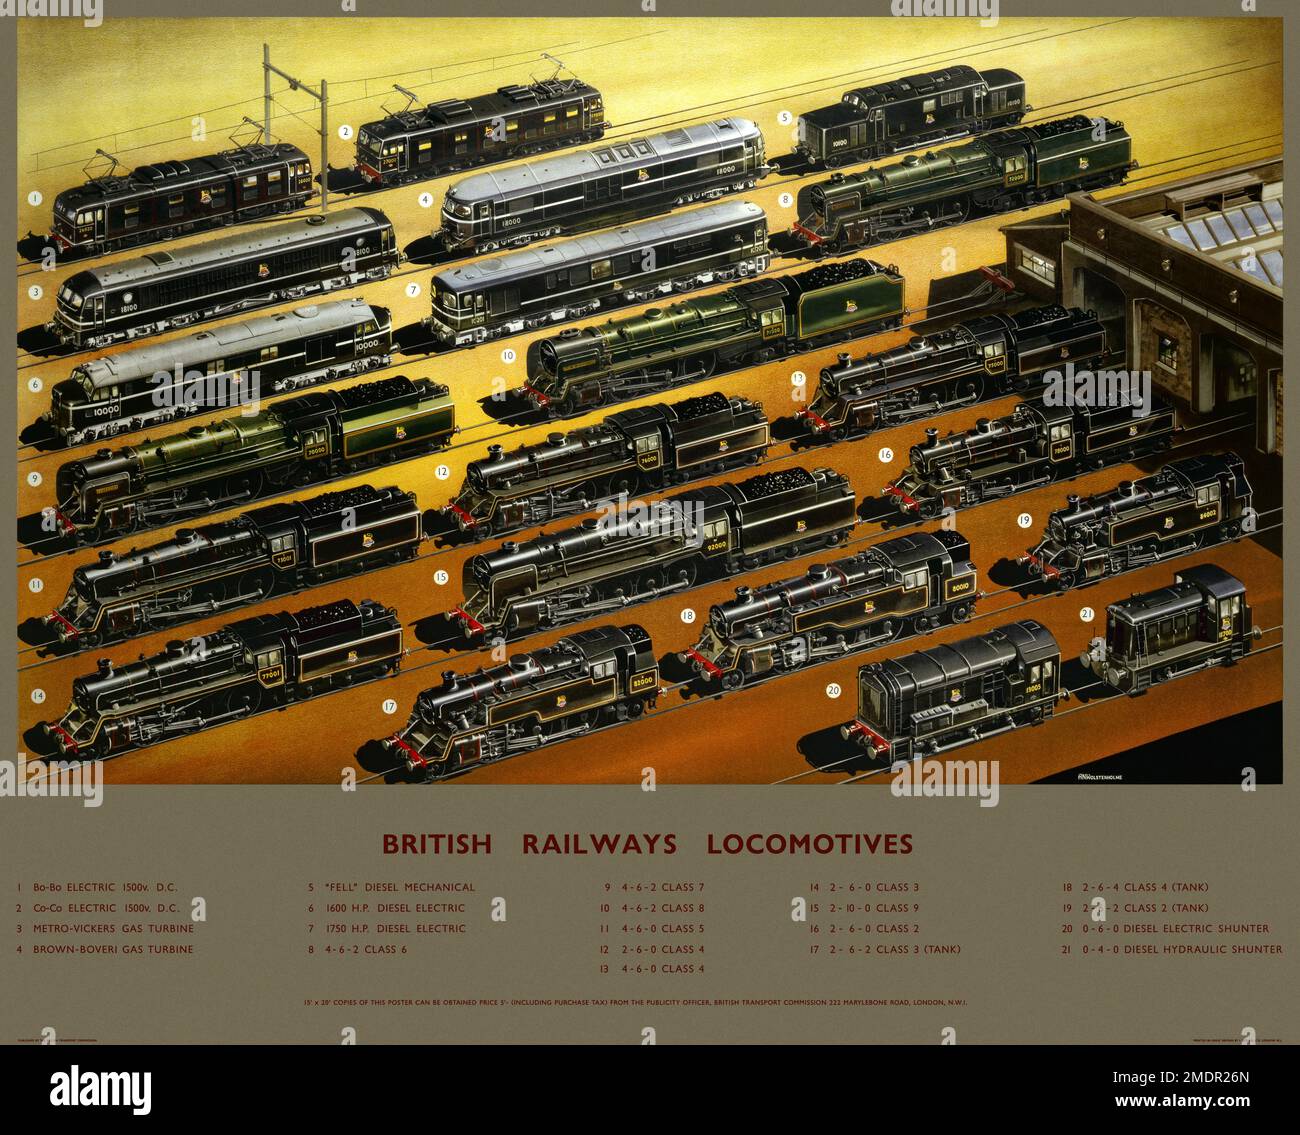 Locomotives British Railways par Arthur Nigel Wolstenholme (1920-2002). Affiche publiée en 1956 au Royaume-Uni. Banque D'Images